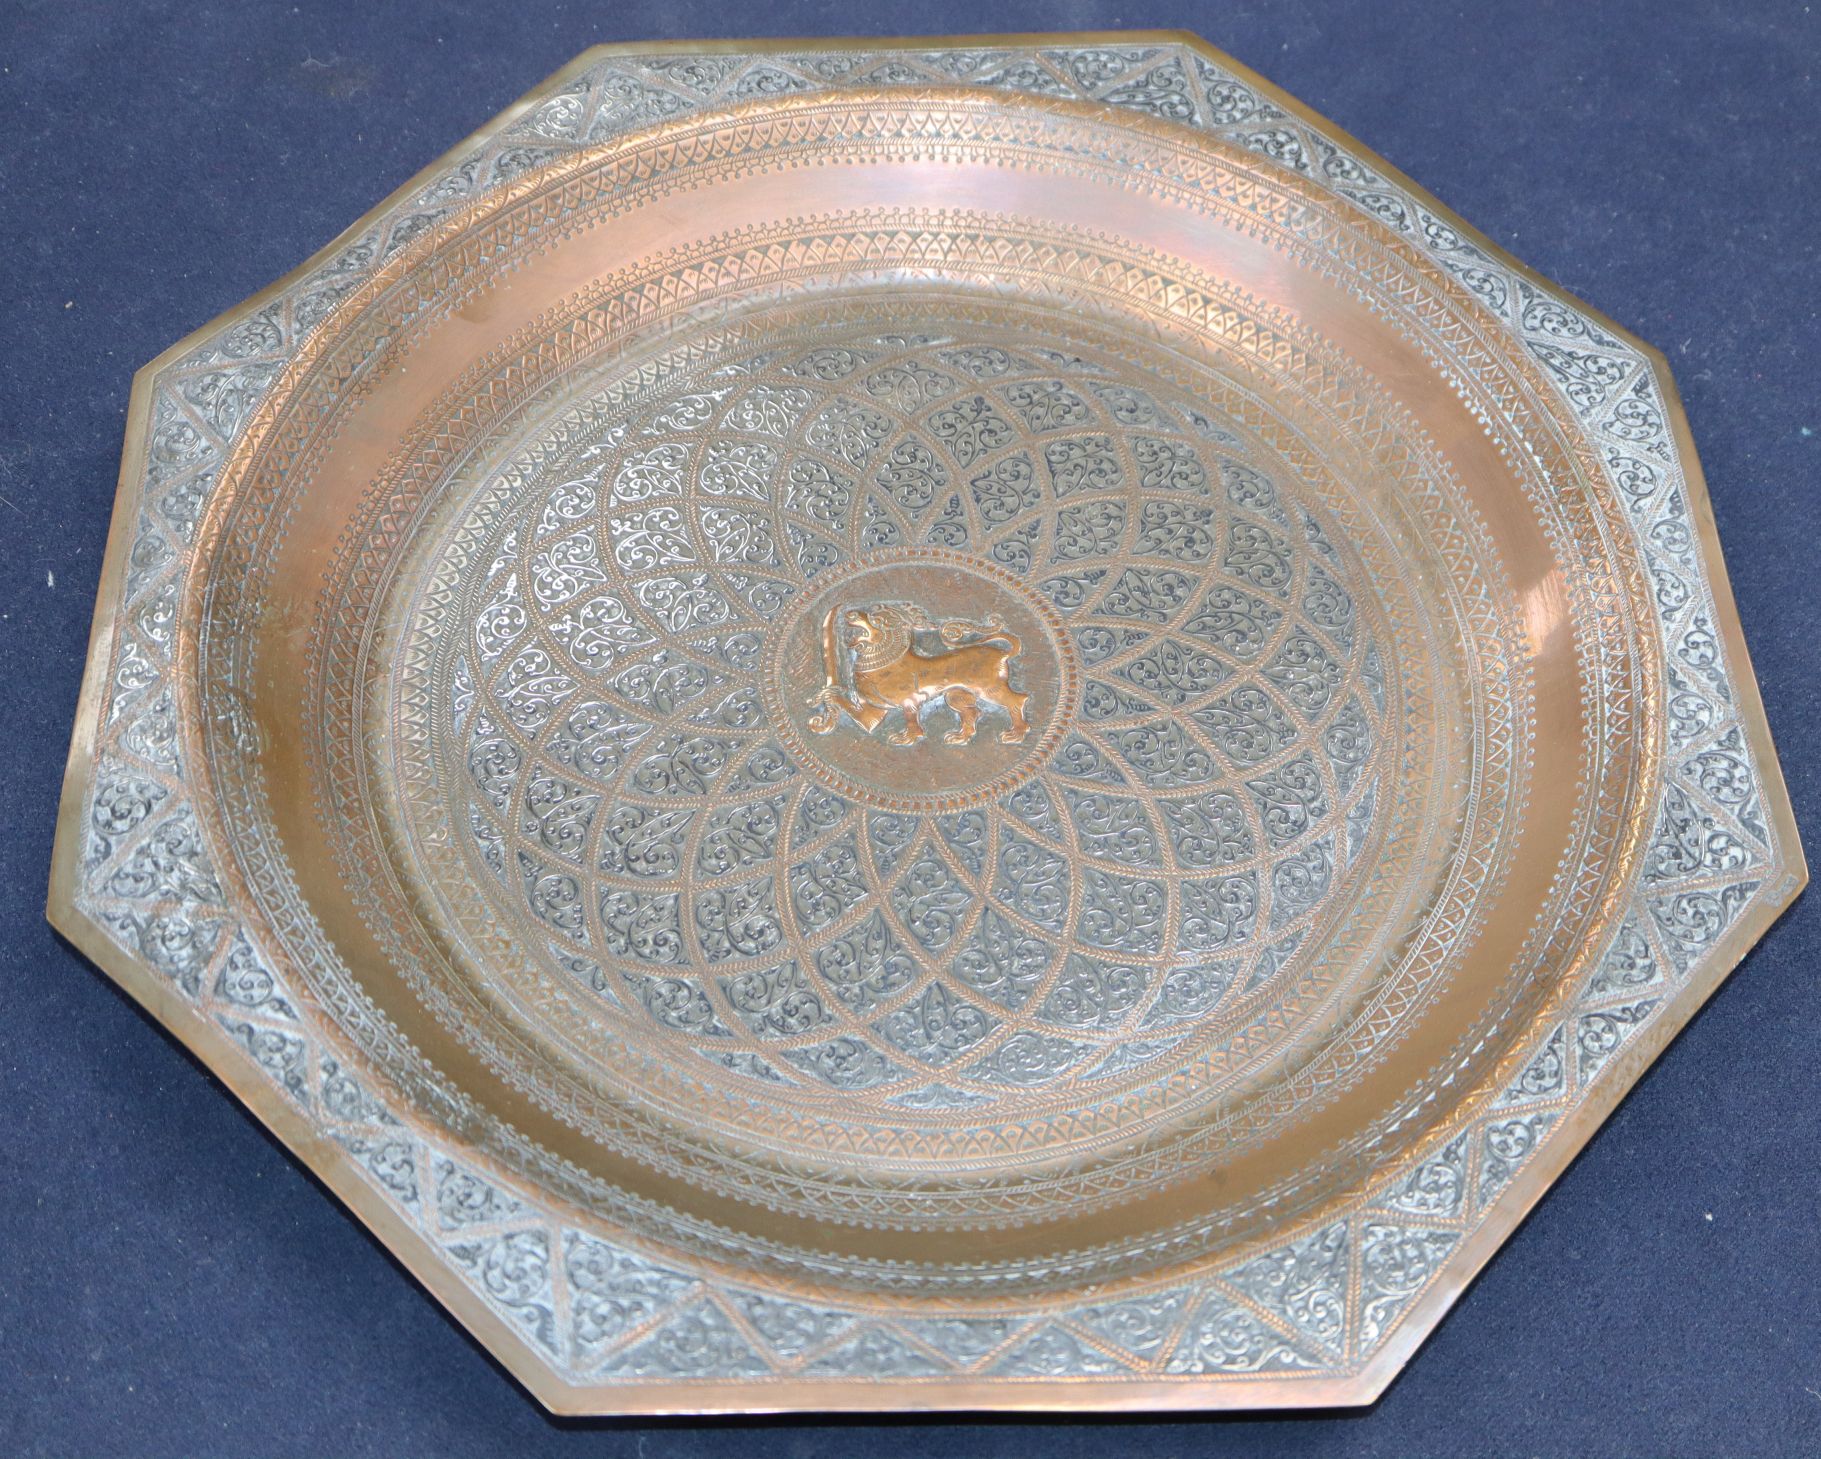 A copper and silver Iranian dish